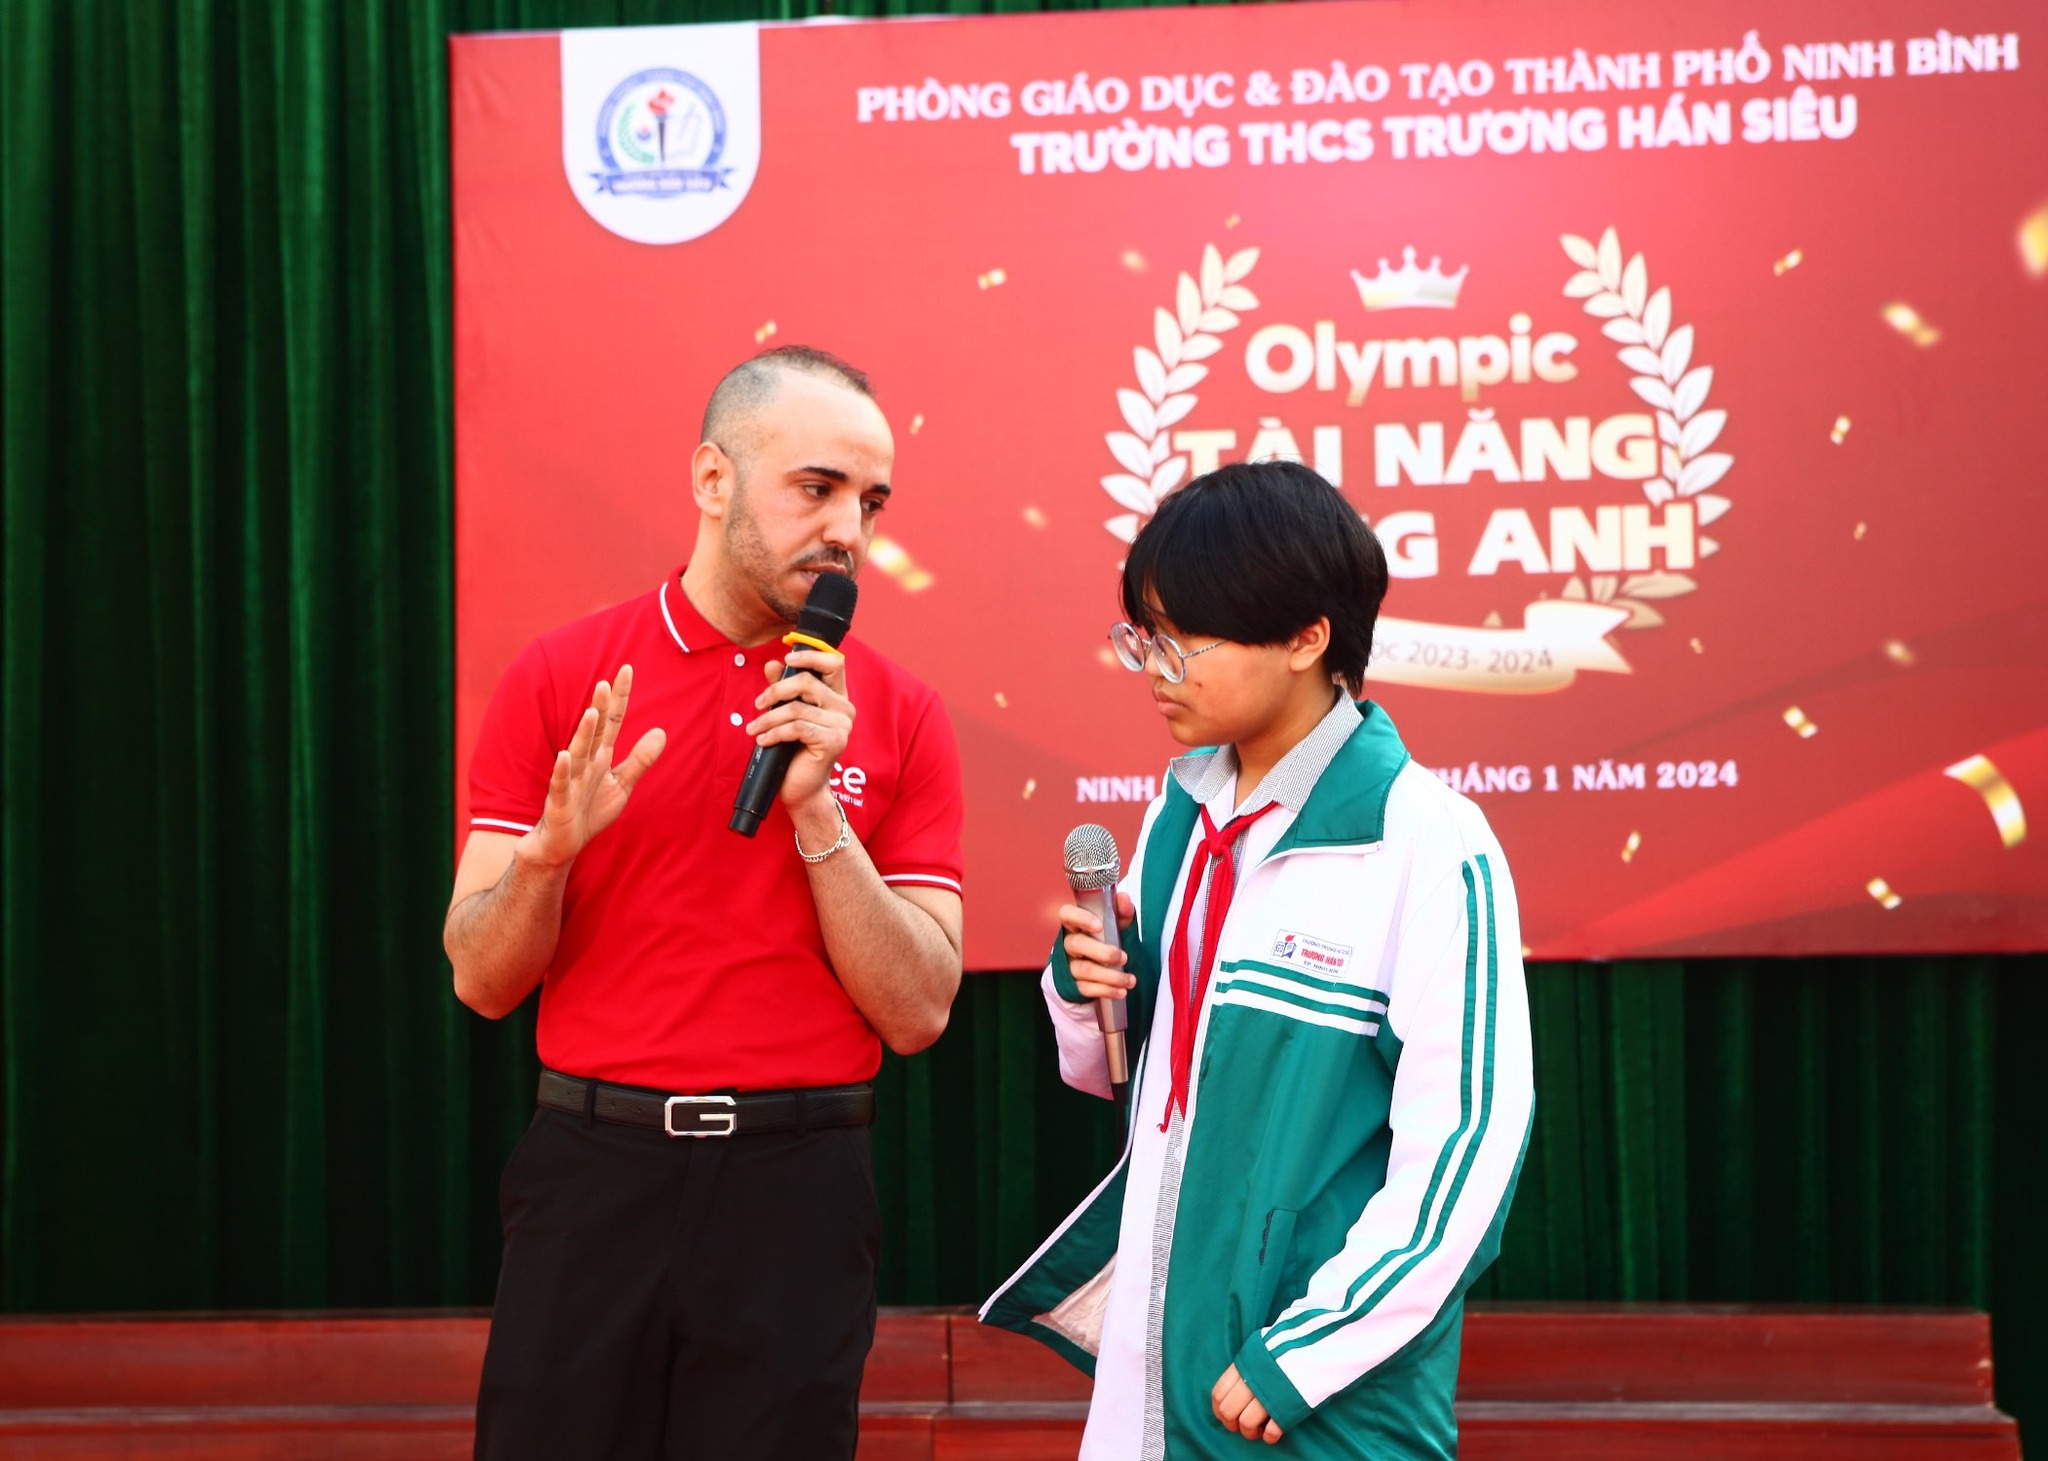 ICE IELTS trao tặng học bổng Olympic Tiếng Anh Trường THCS Trương Hán Siêu 